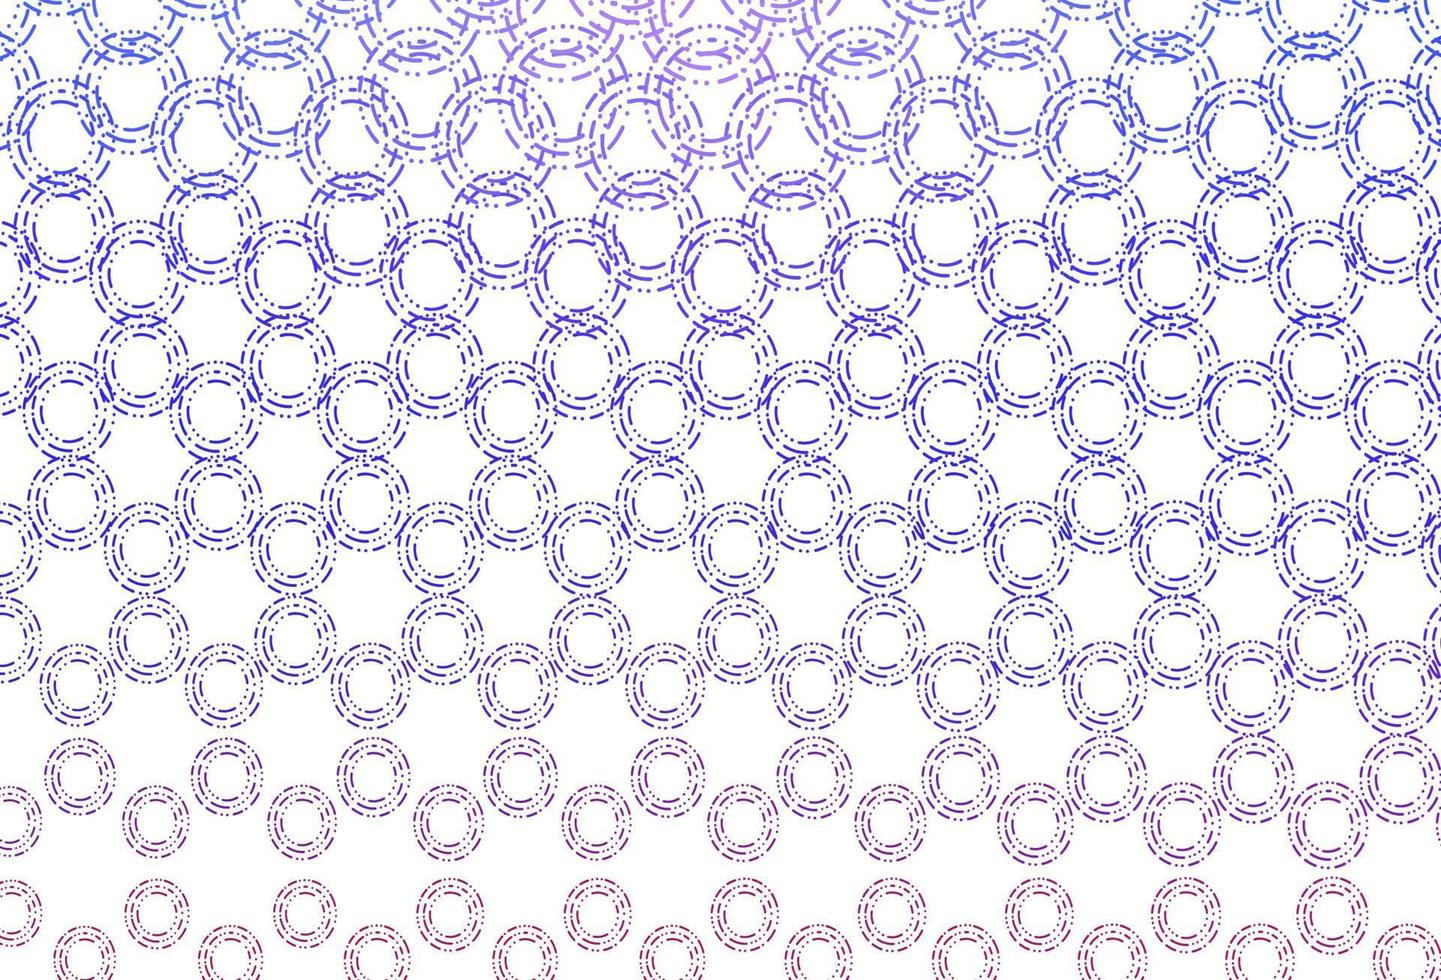 patrón de vector rosa claro, azul con esferas.